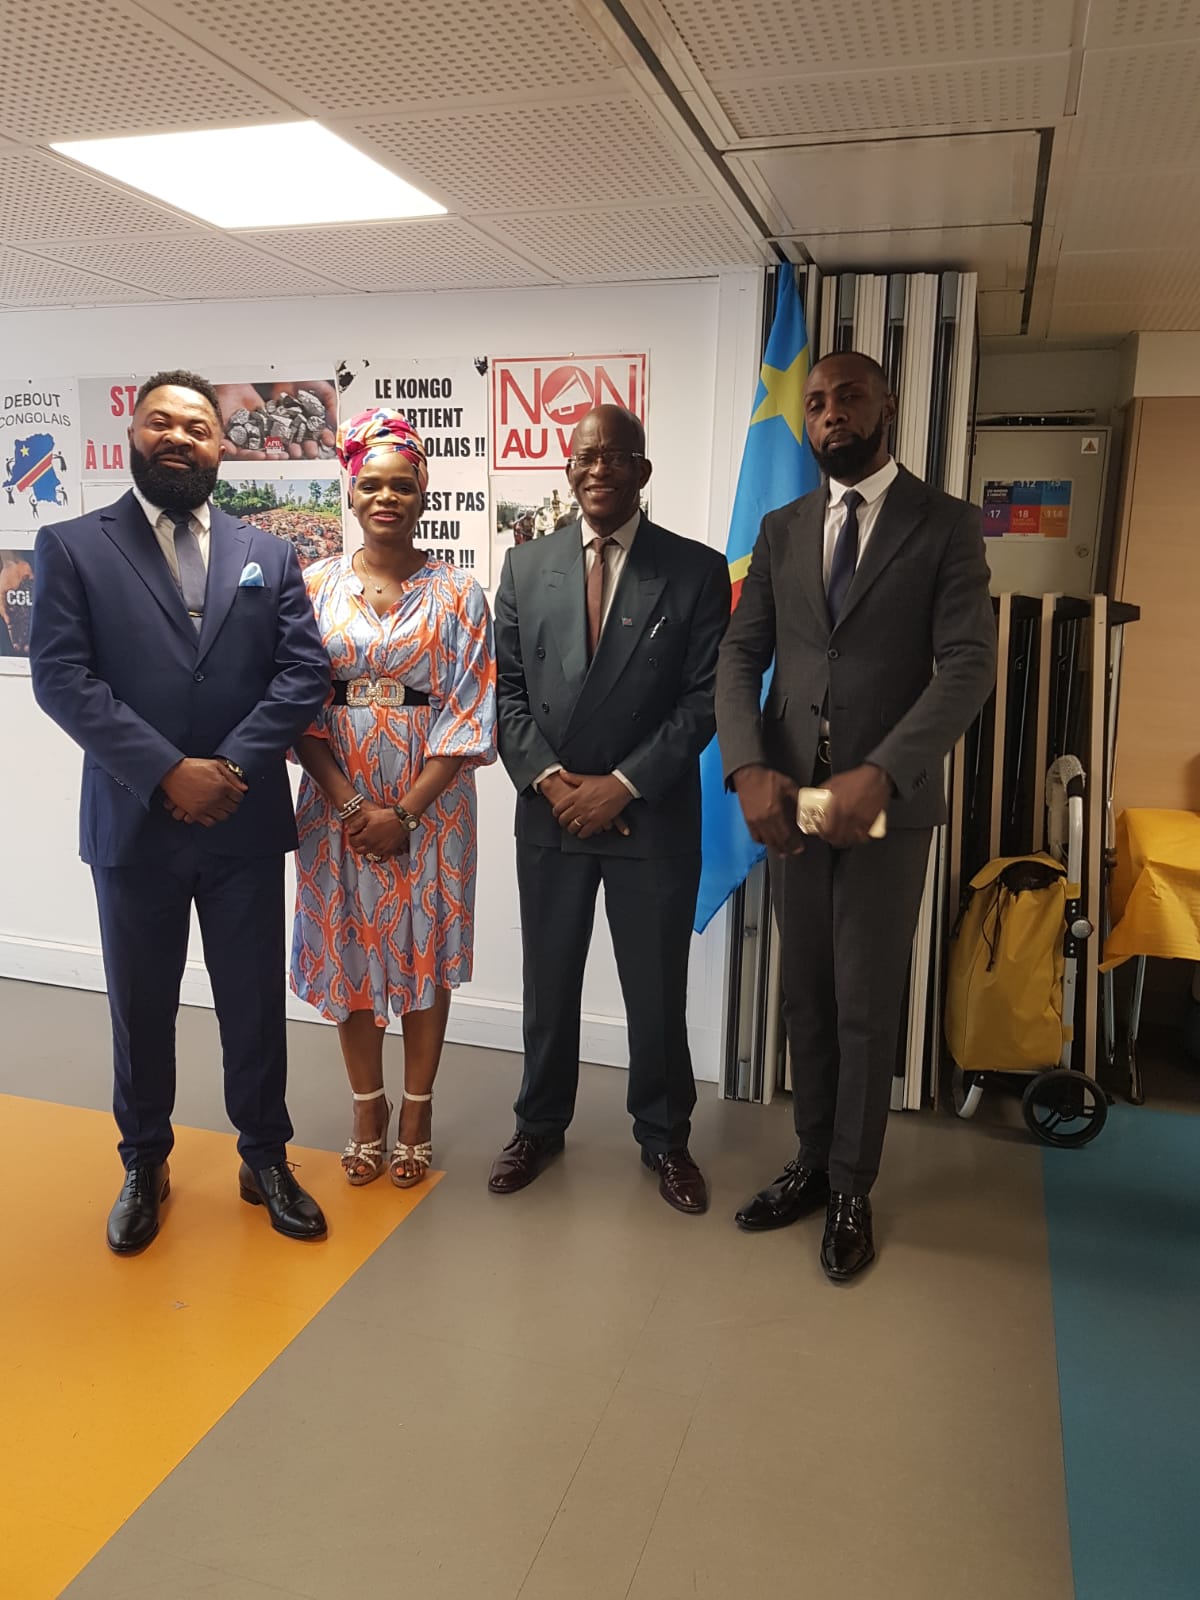 Paris. « Esika tovandaka » et RCK pour bouger les lignes des élections congolaises